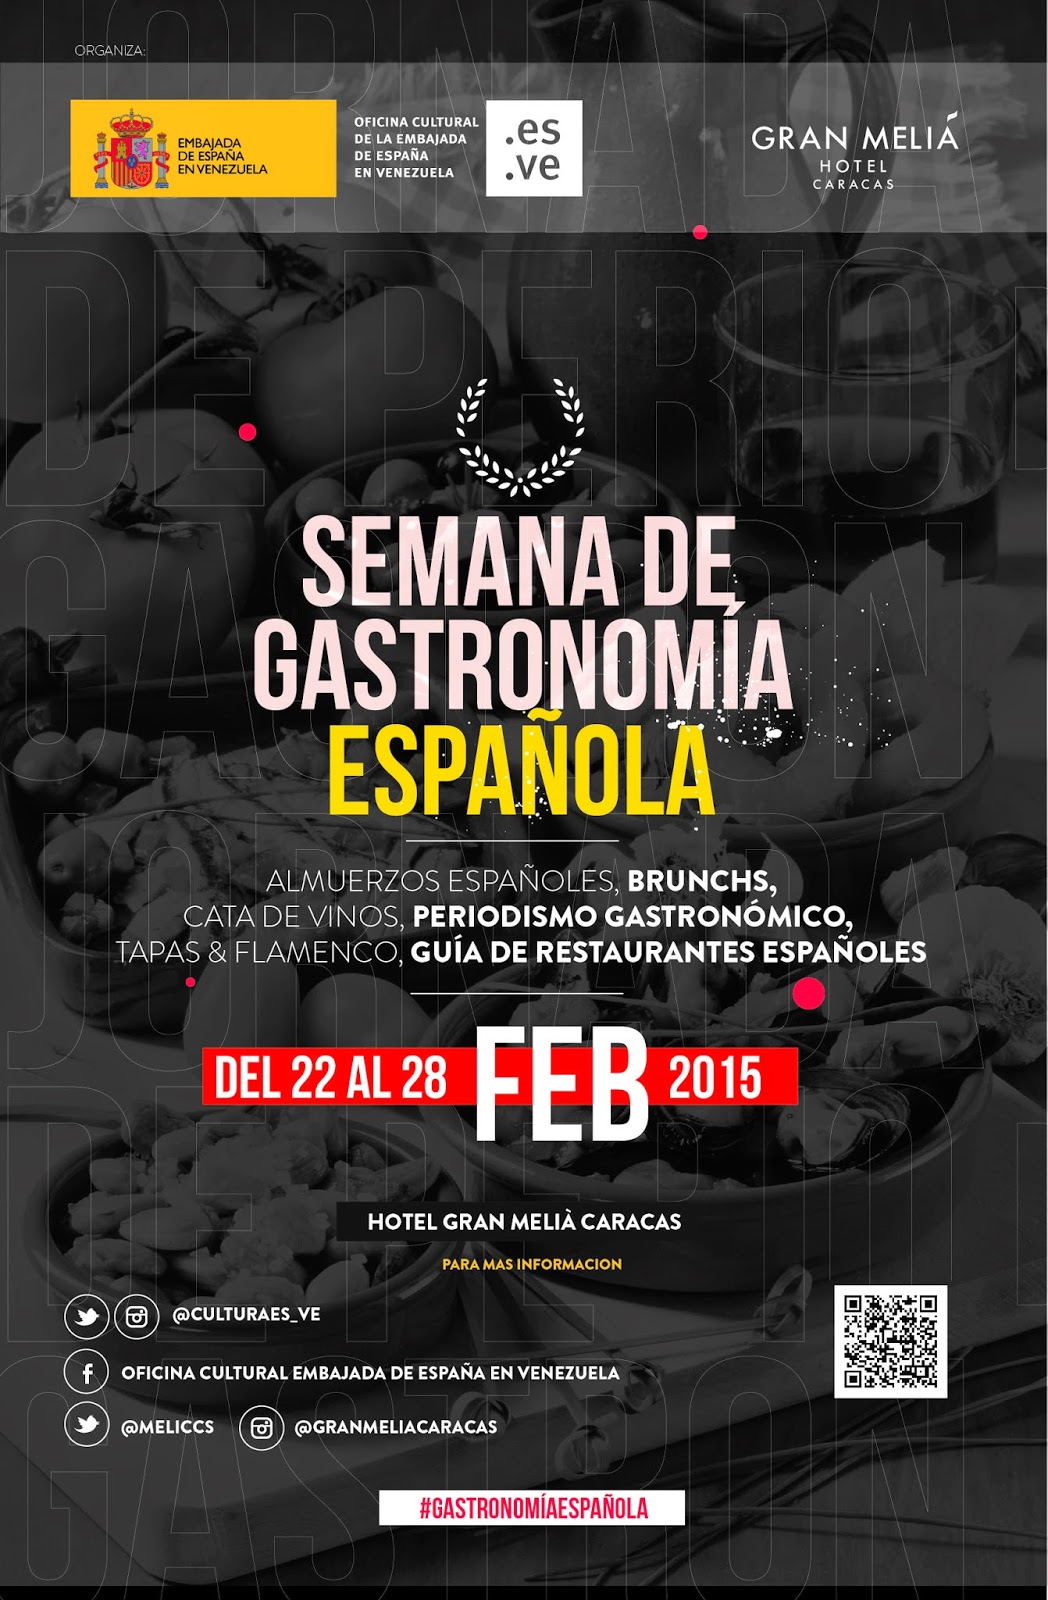 Semana Gastronómica Española de 22 al 28 de febrero en Caracas.